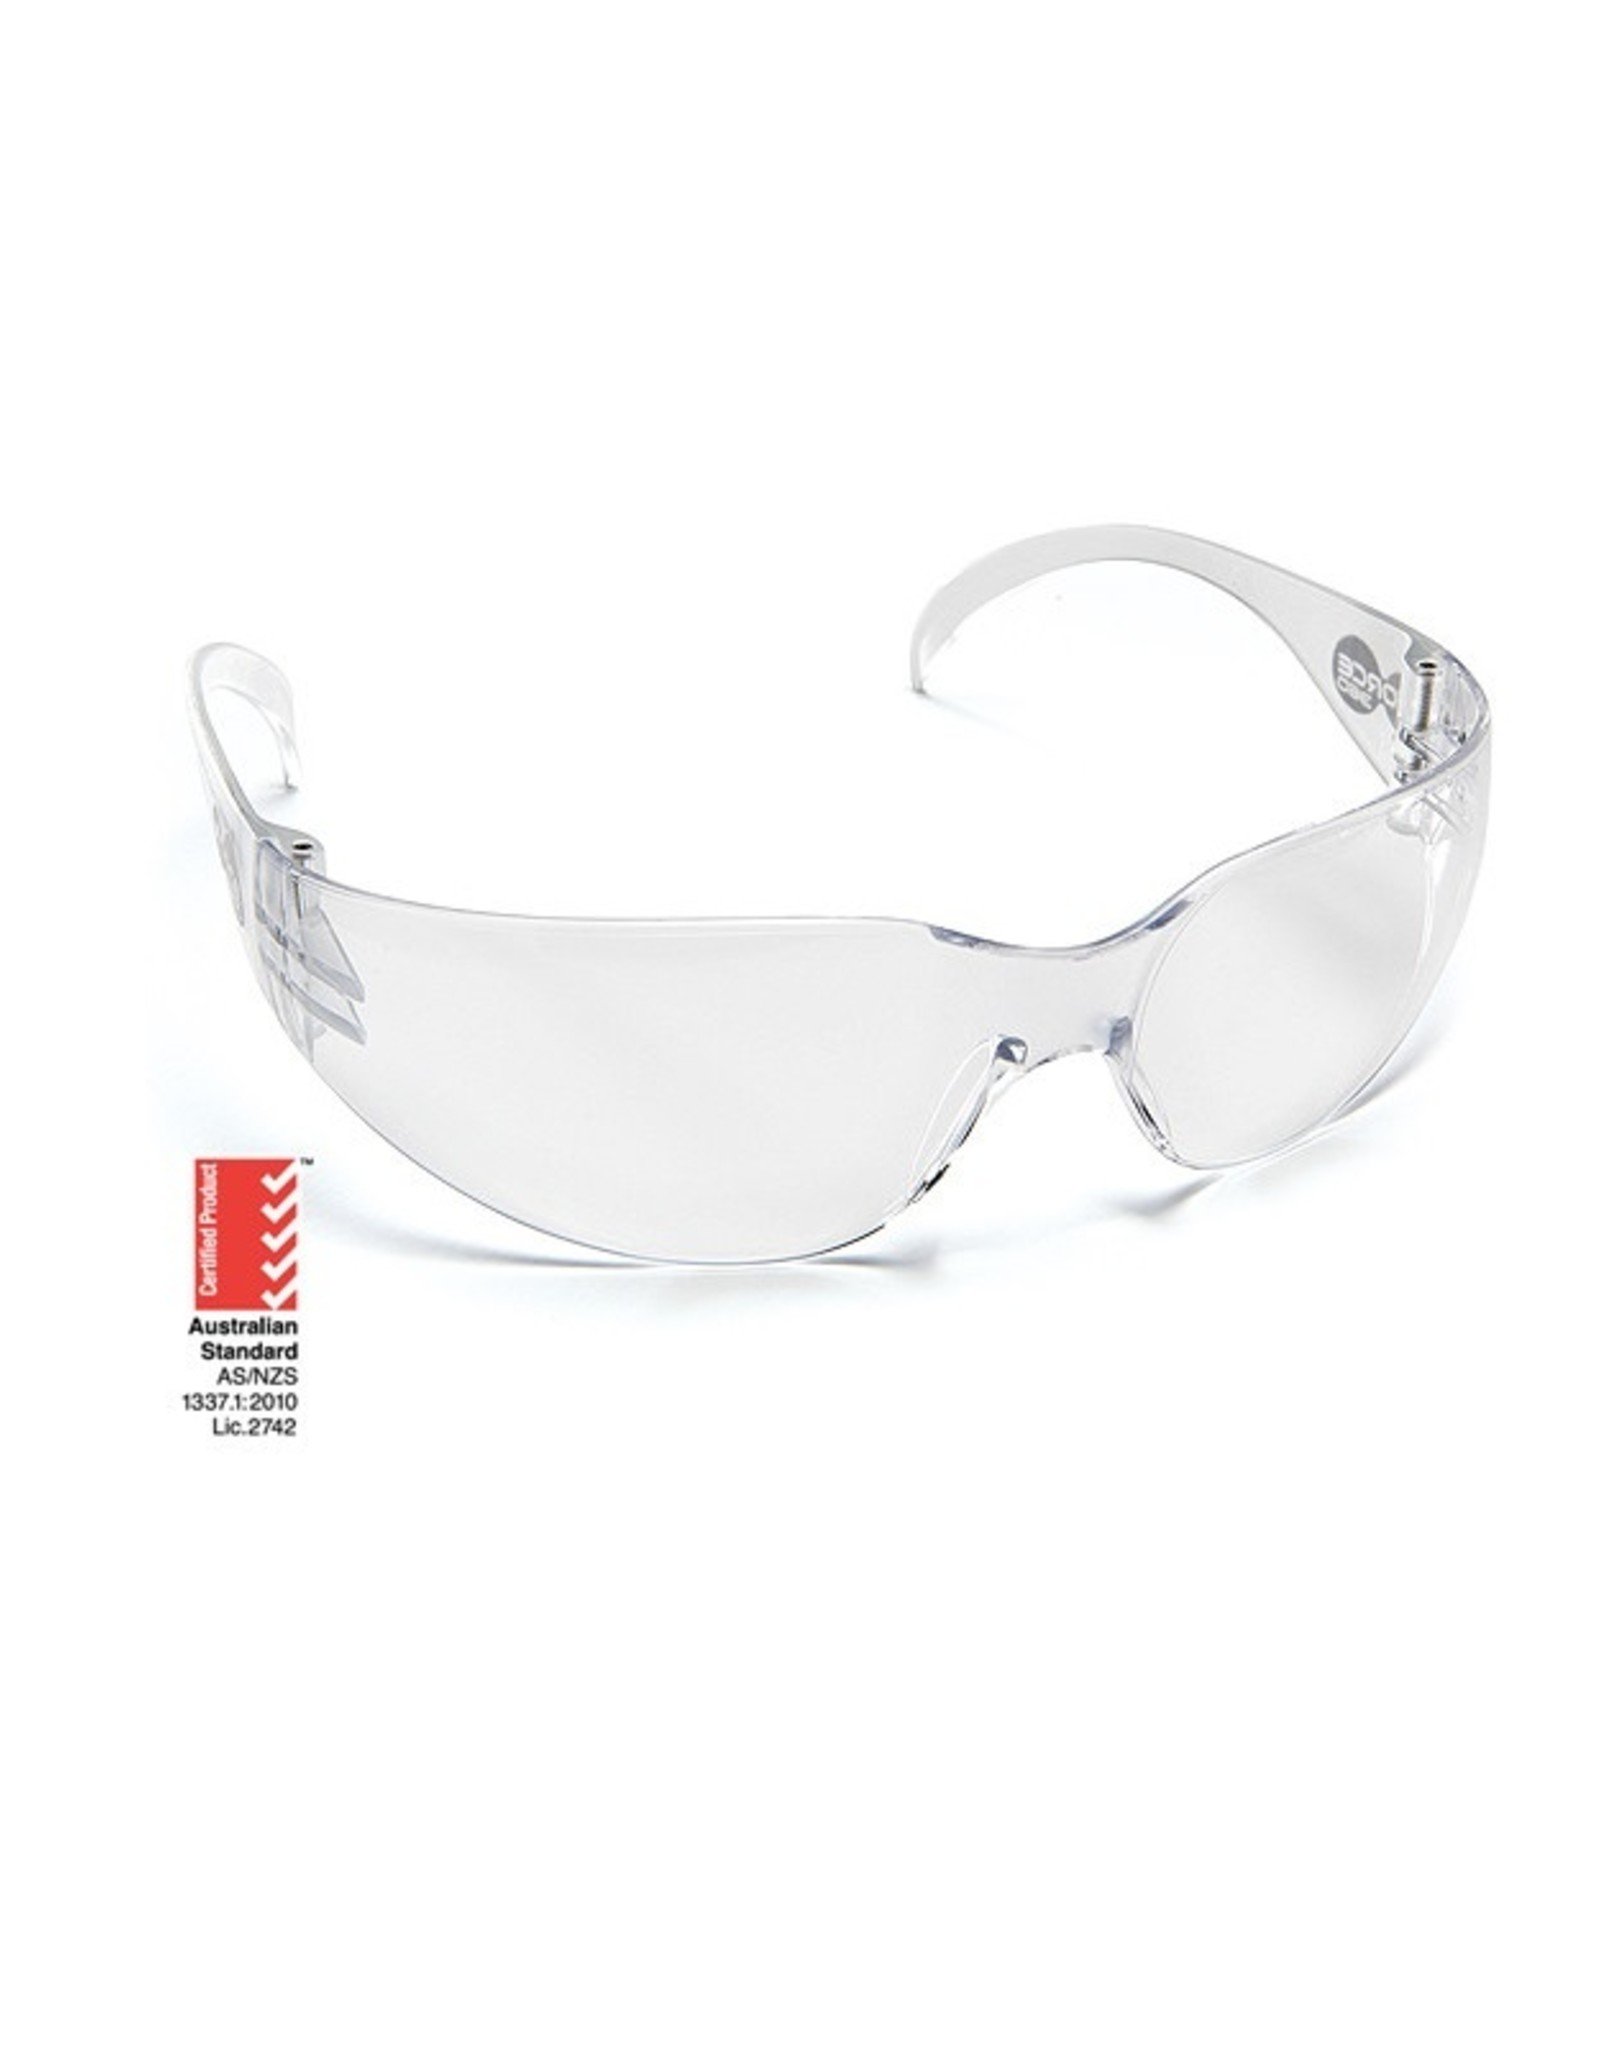 Force360 Force360 Radar Safety Glasses